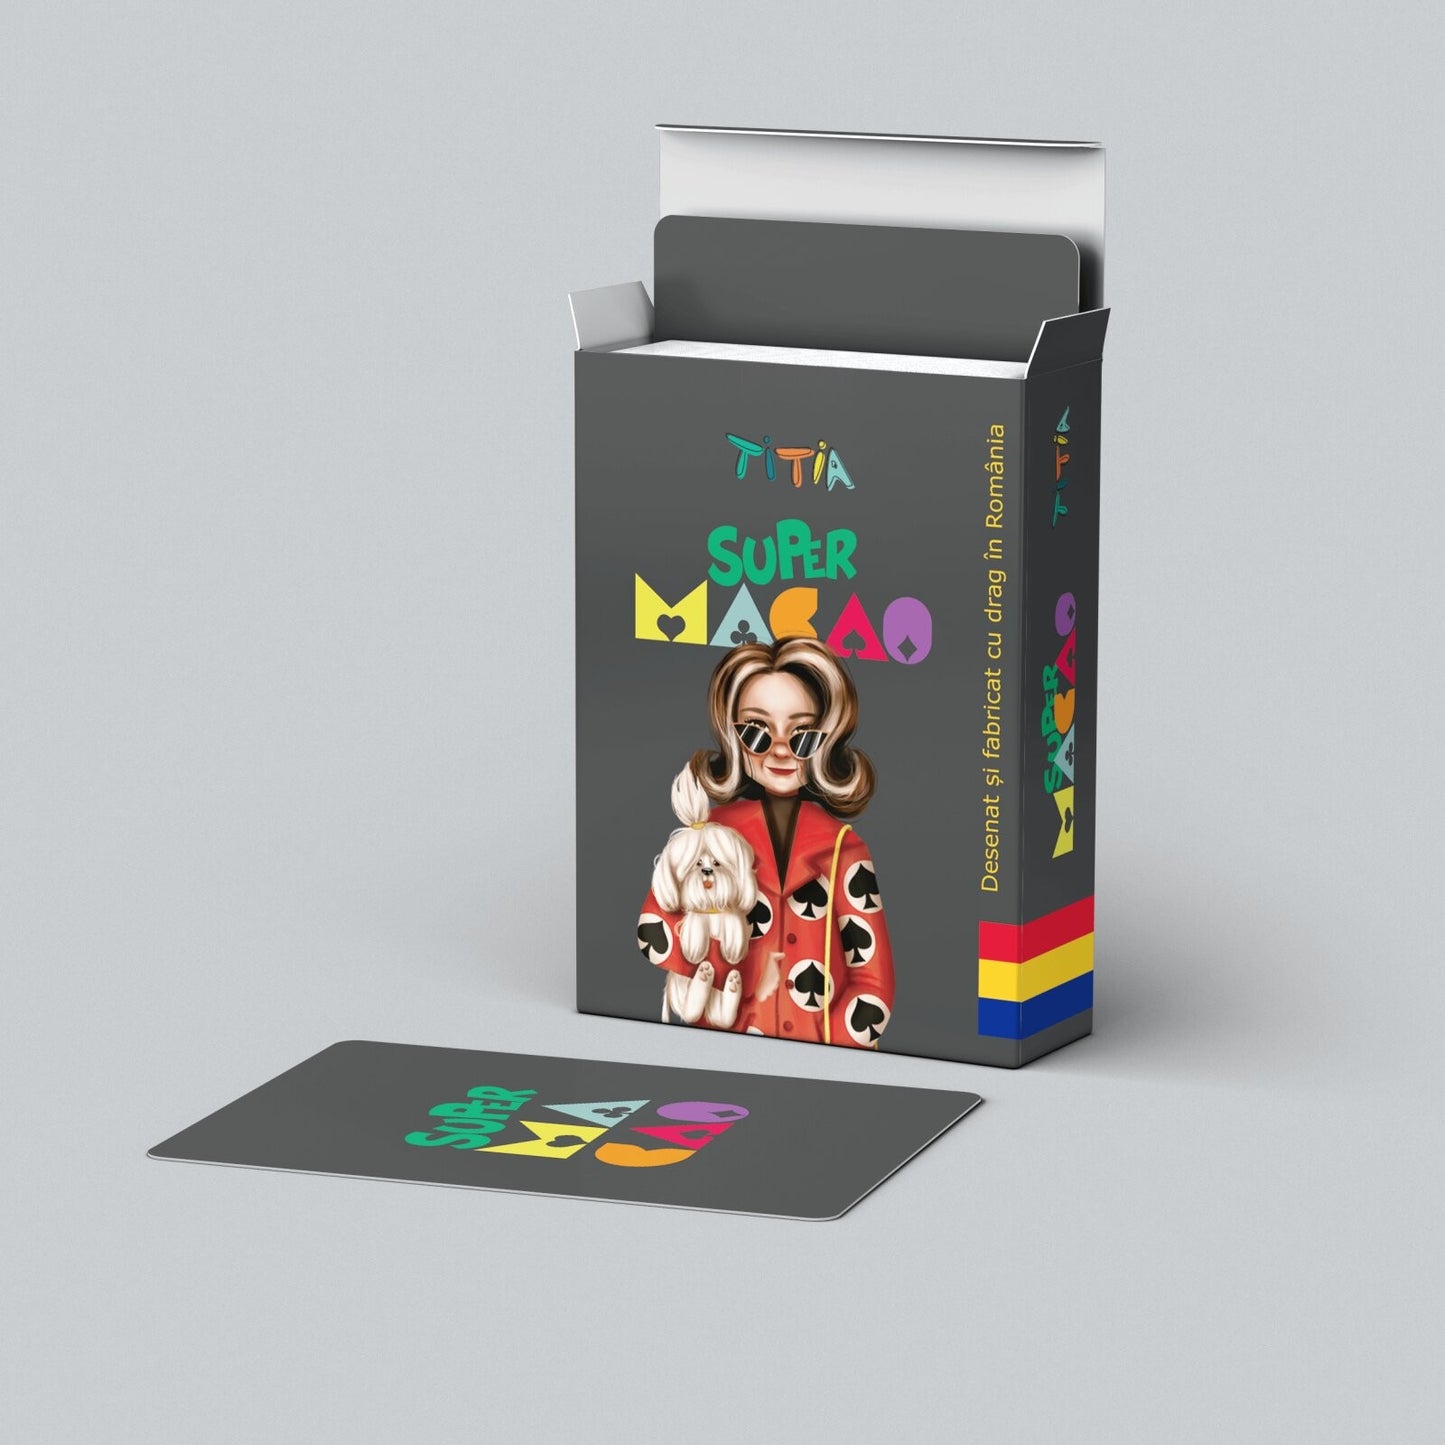 Super Macao, Jocul reinventat al copilariei5234 carti de joc speciale